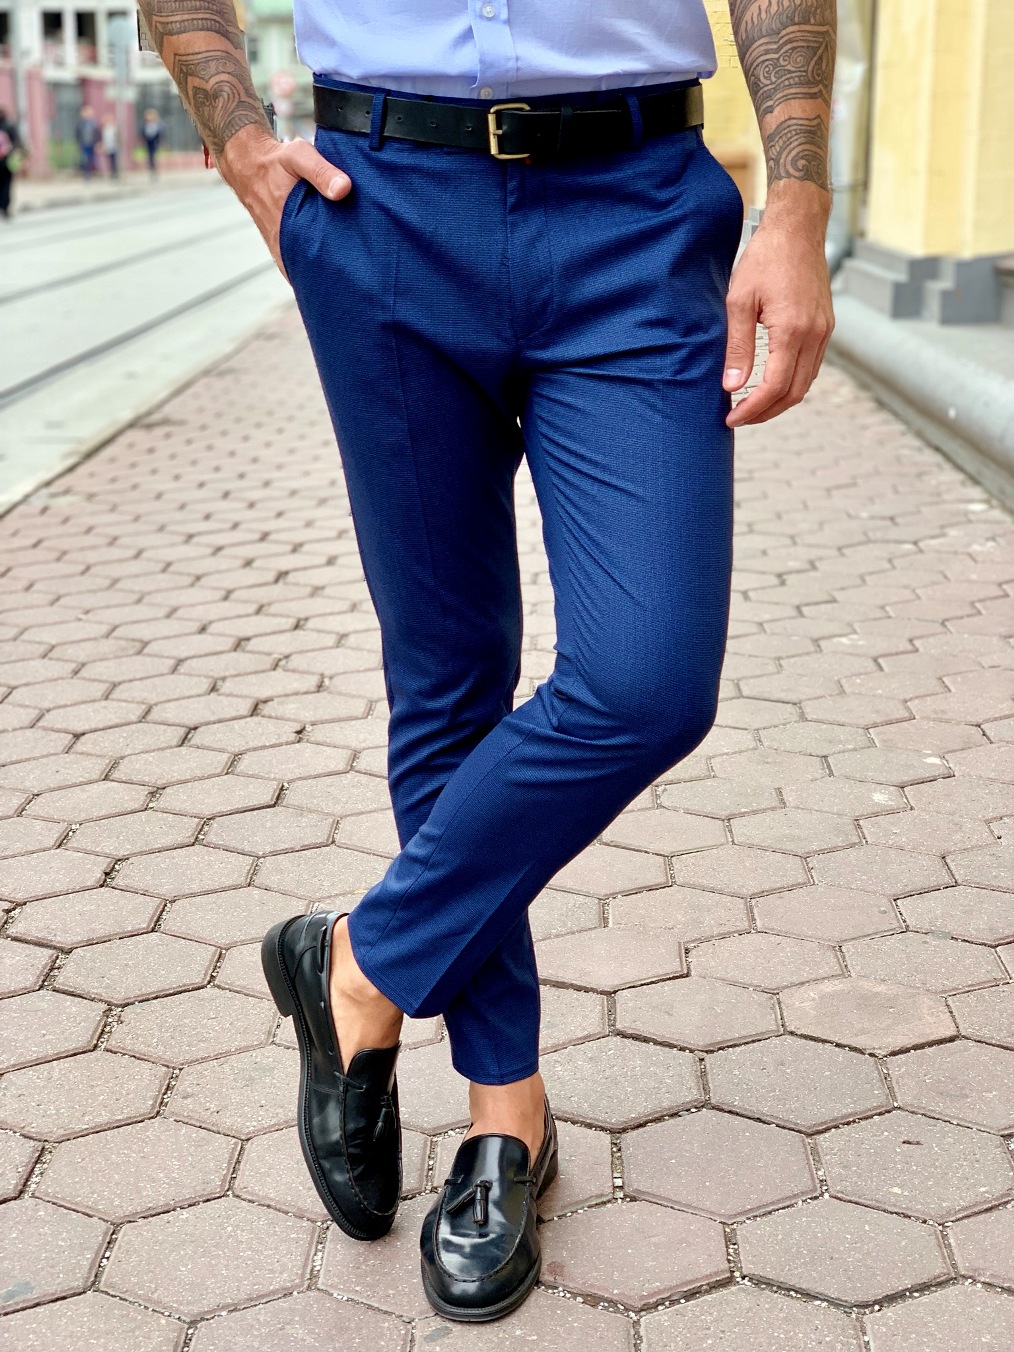 Стильные мужские брюки синего цвета. Арт.:6-1004-3 – купить в магазинемужской одежды Smartcasuals